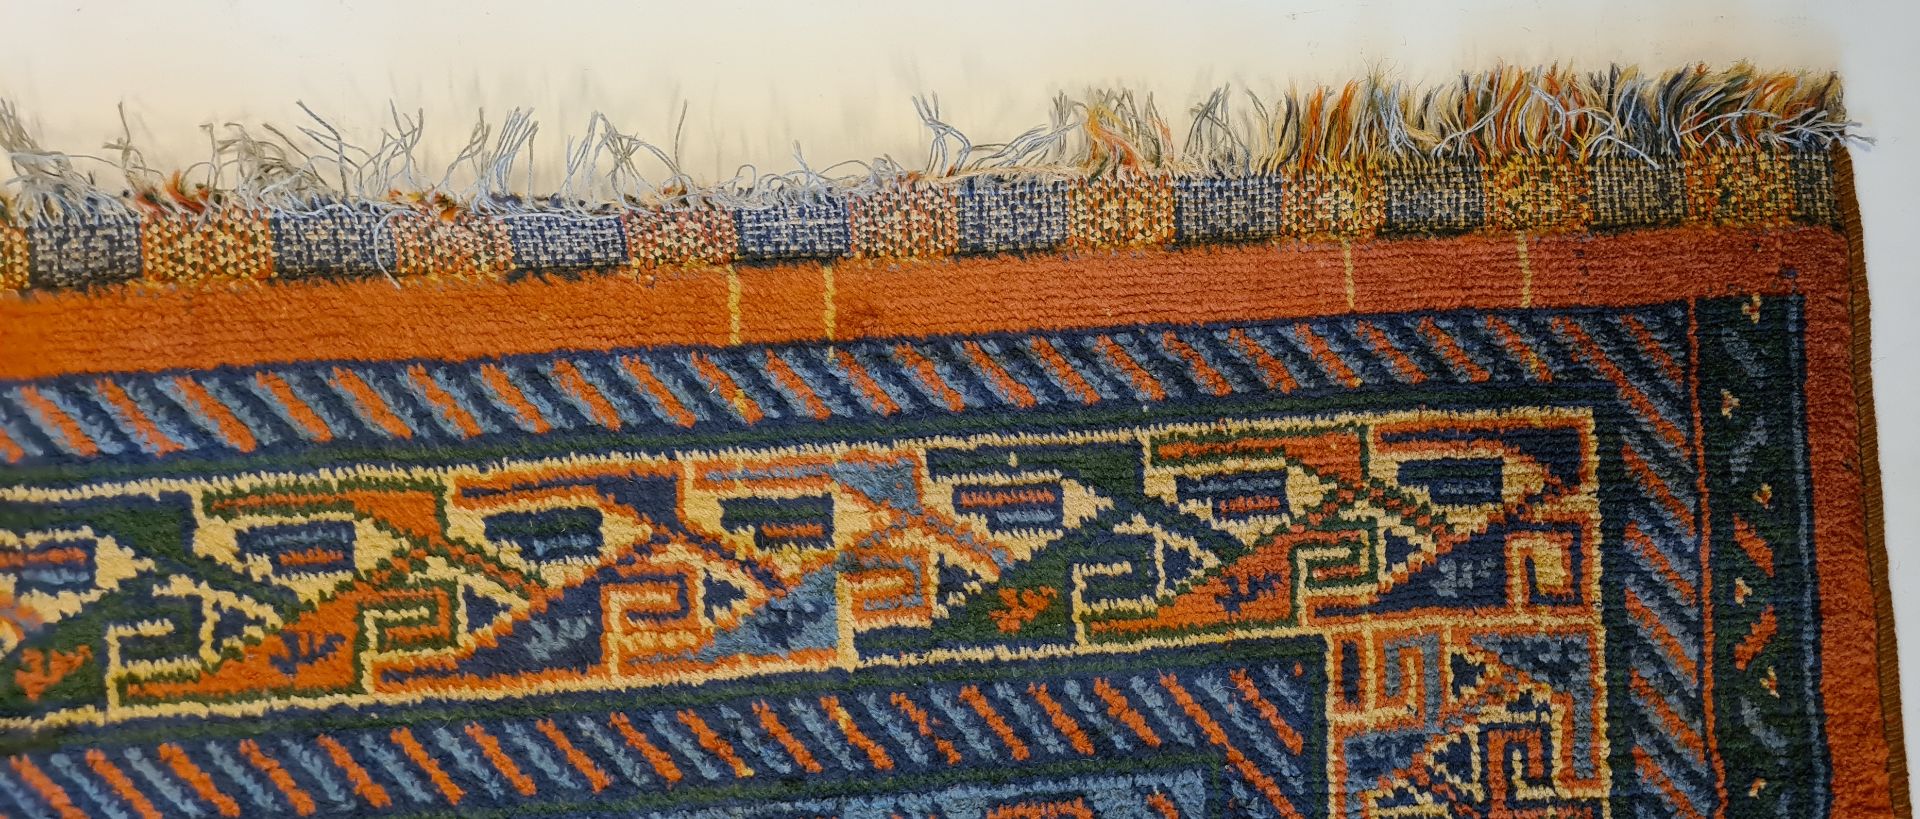 Teppich, orange/blau, ca. 245 x 180 cm - Bild 3 aus 5